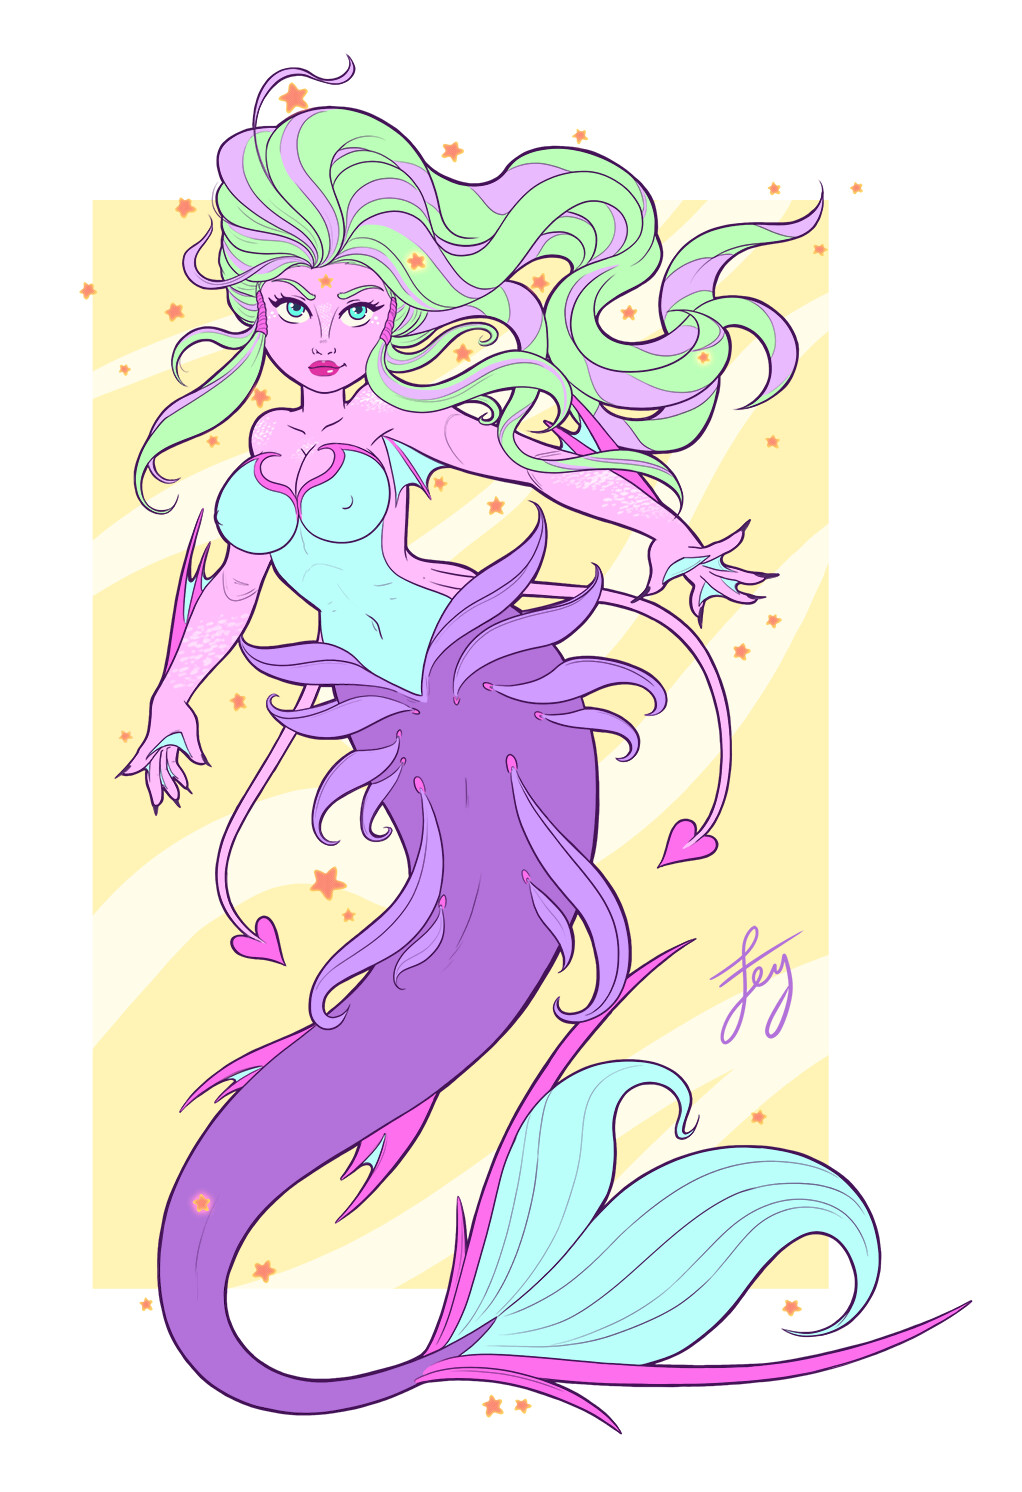 Lorelei the Mermaid